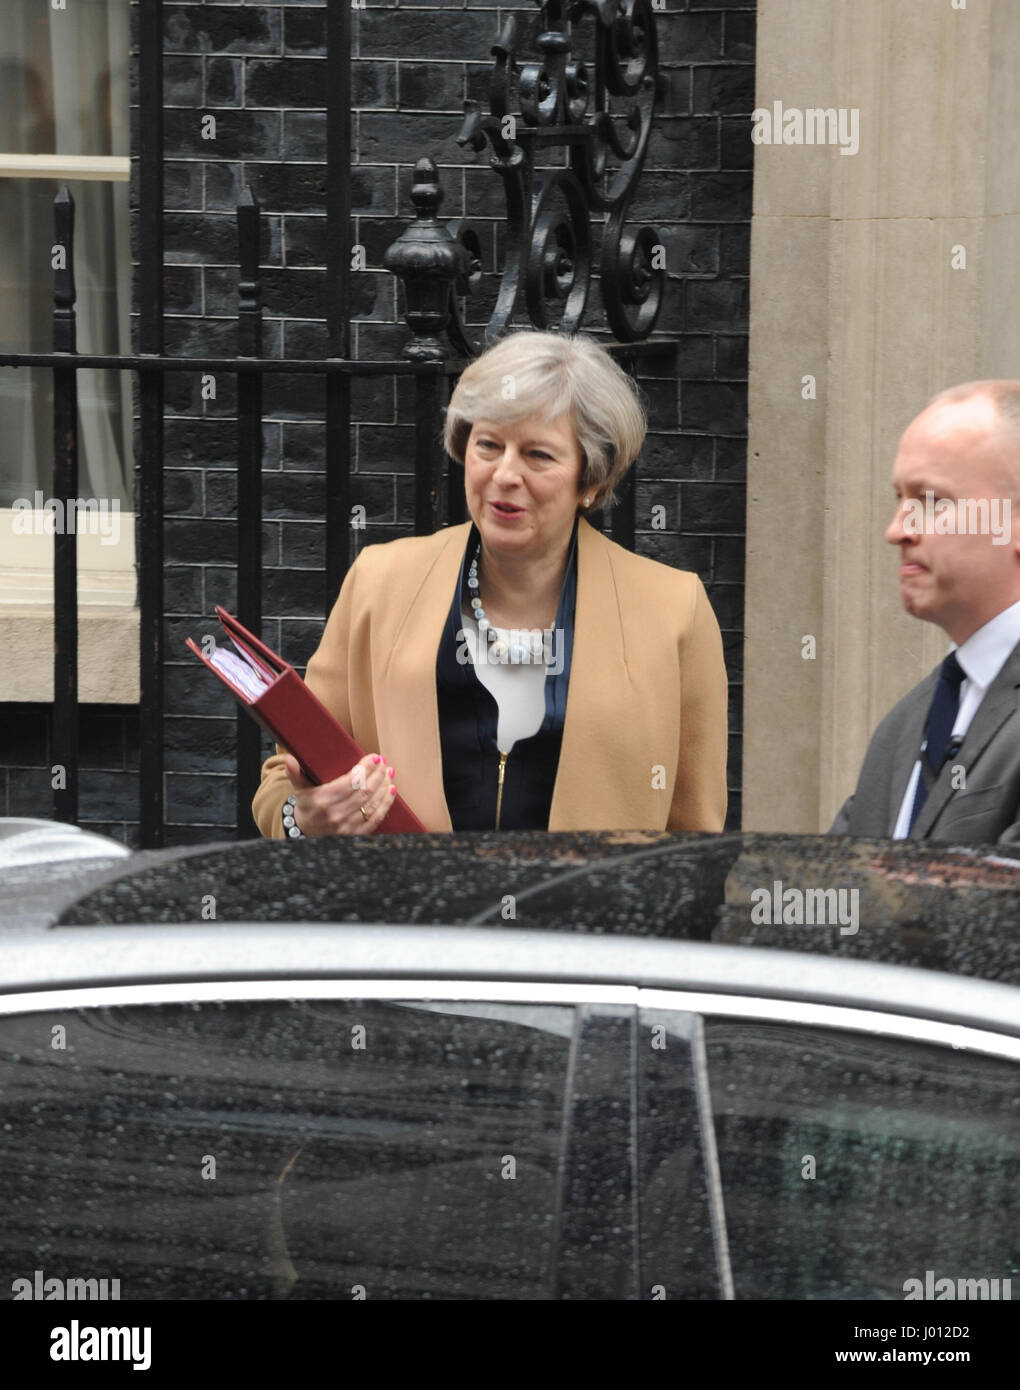 Giorno di bilancio al 10 di Downing Street con: Theresa Maggio dove: Londra, Regno Unito quando: 08 Mar 2017 Foto Stock